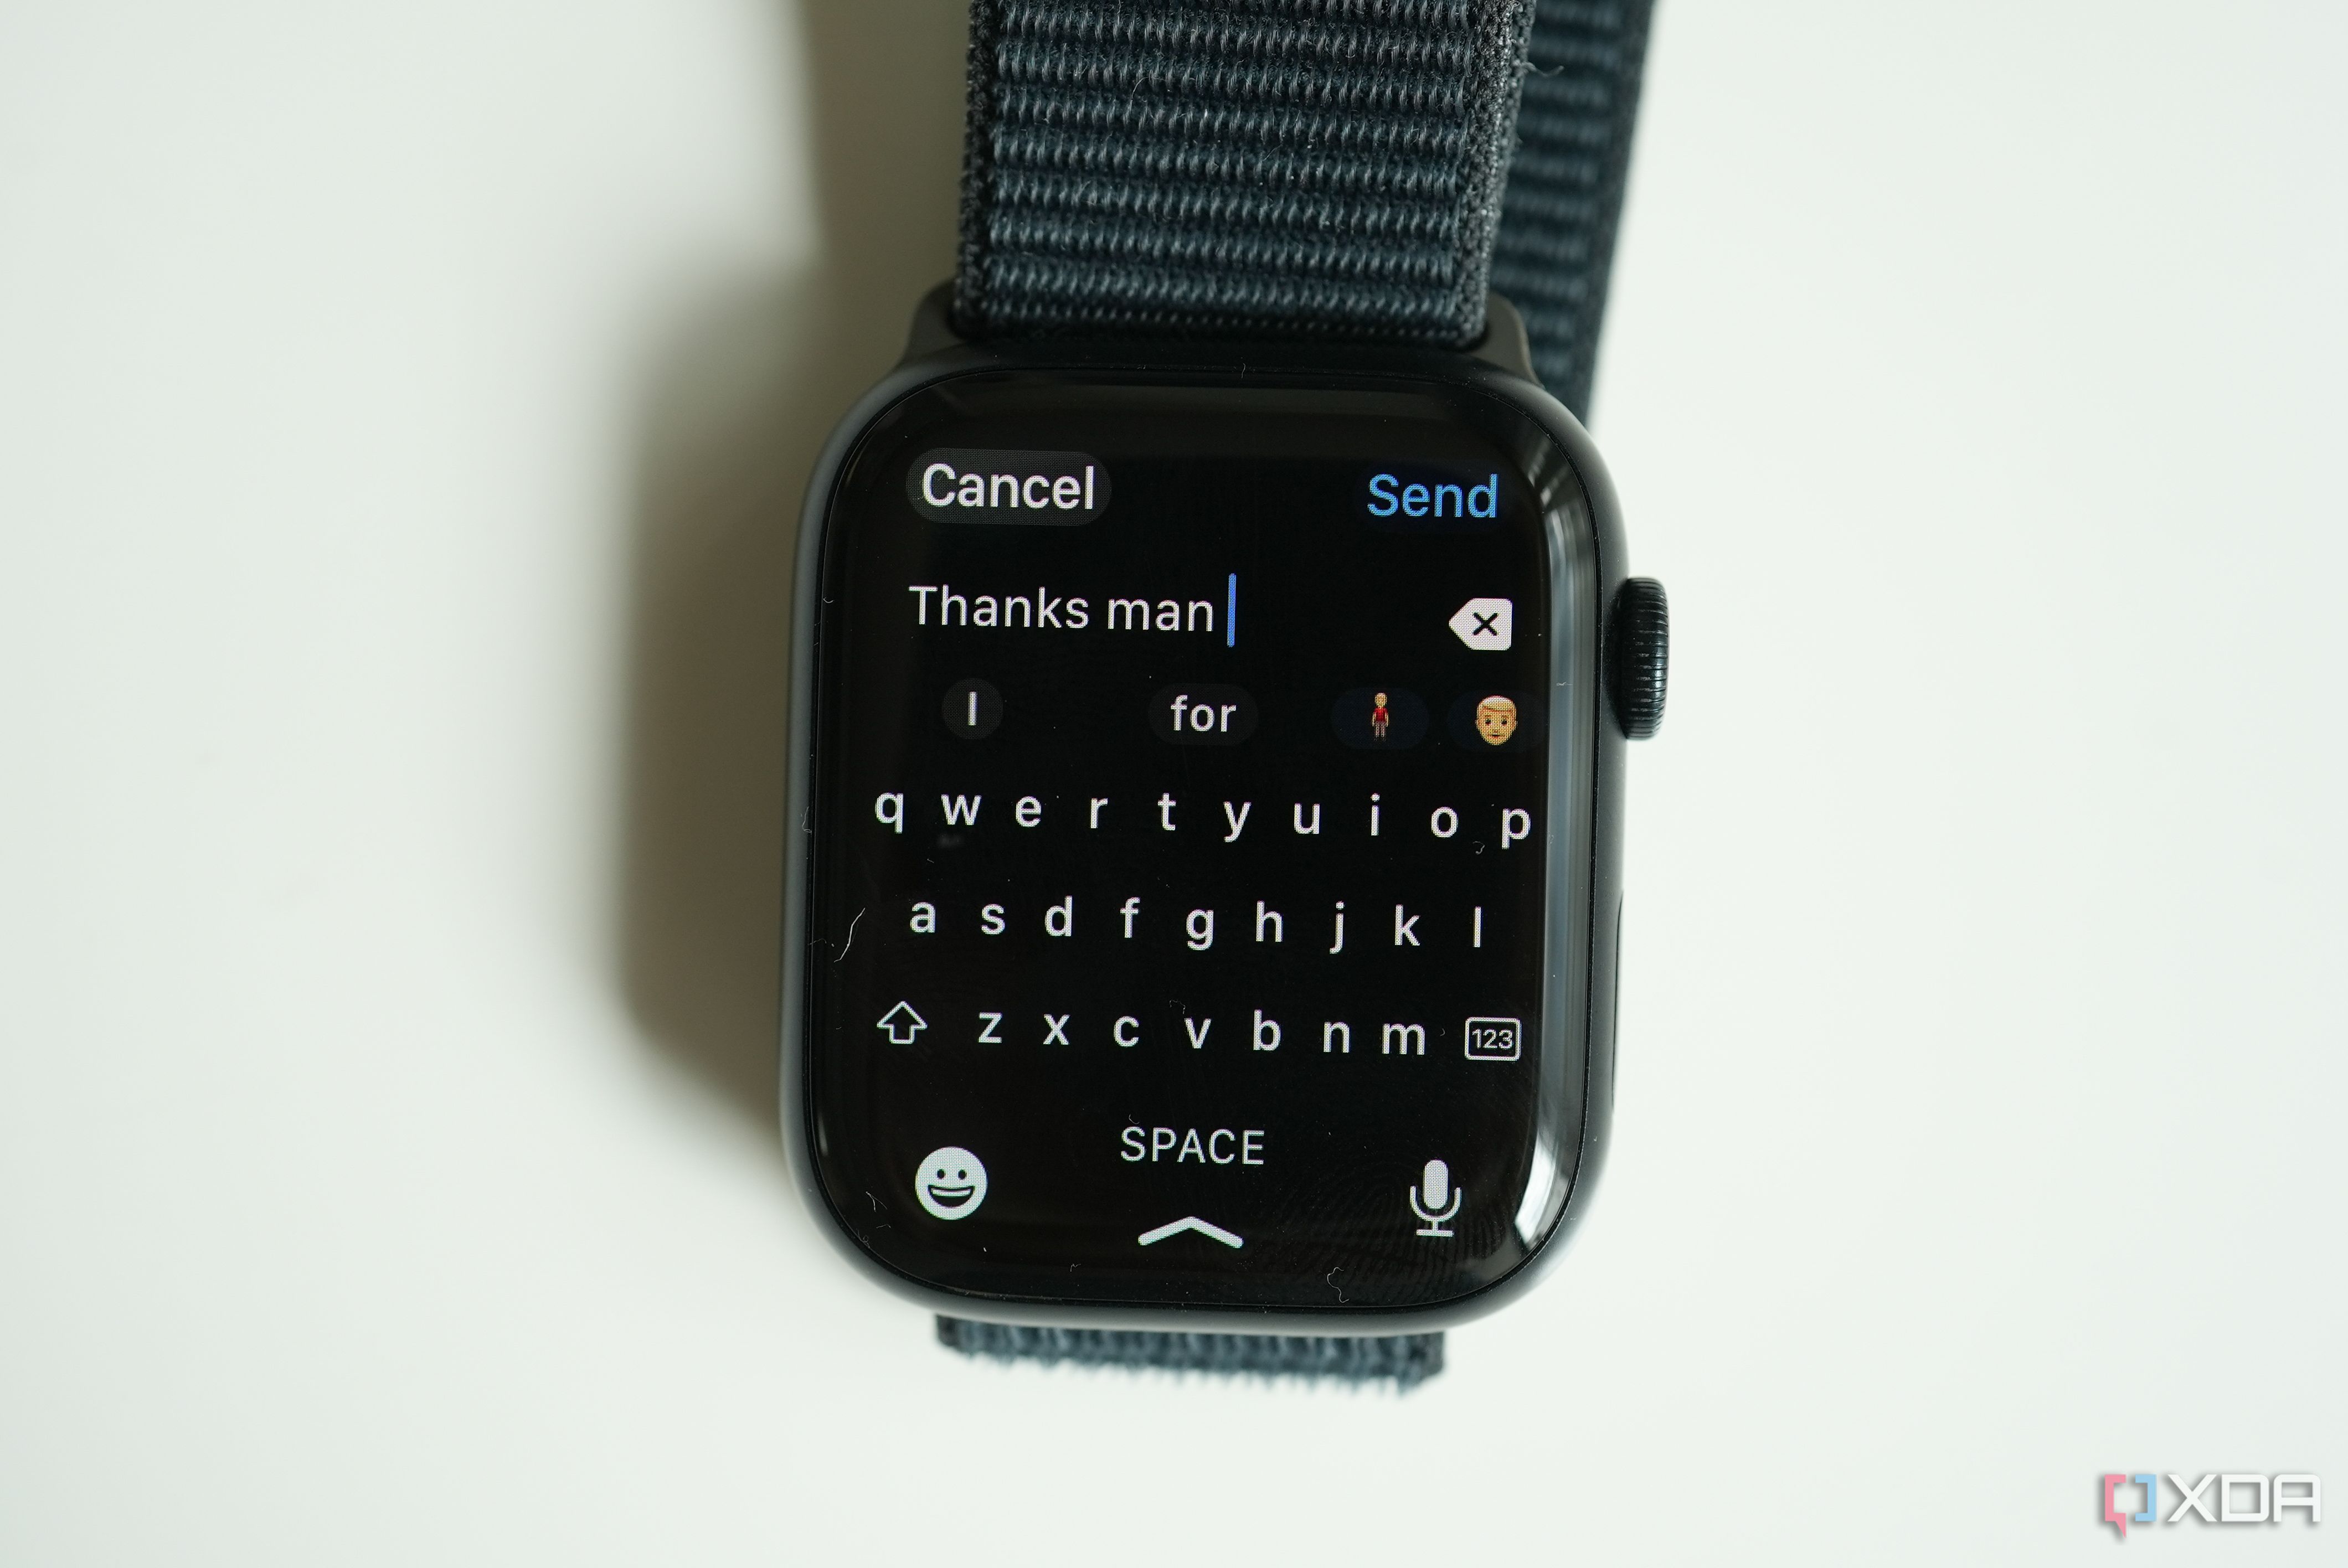 The Apple Watch keyboard